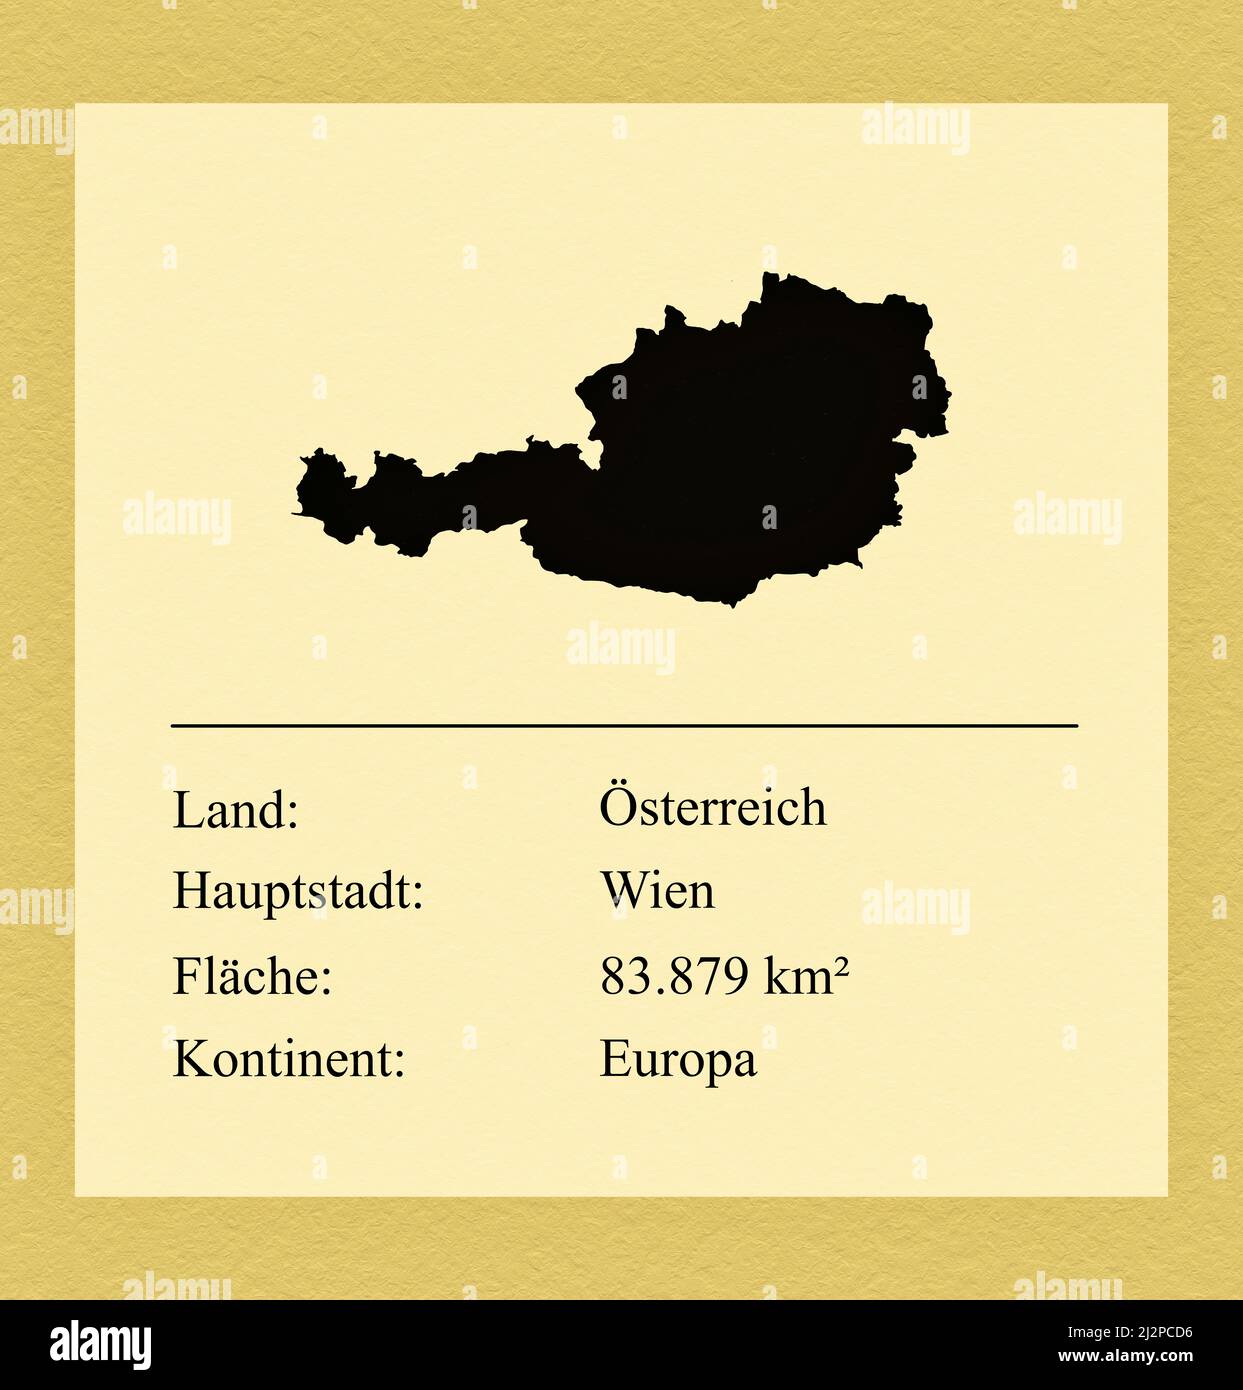 Umrisse des Landes Österreich, darunter ein kleiner Steckbrief mit Ländernamen, Hauptstadt, Fläche und Kontinent Foto Stock